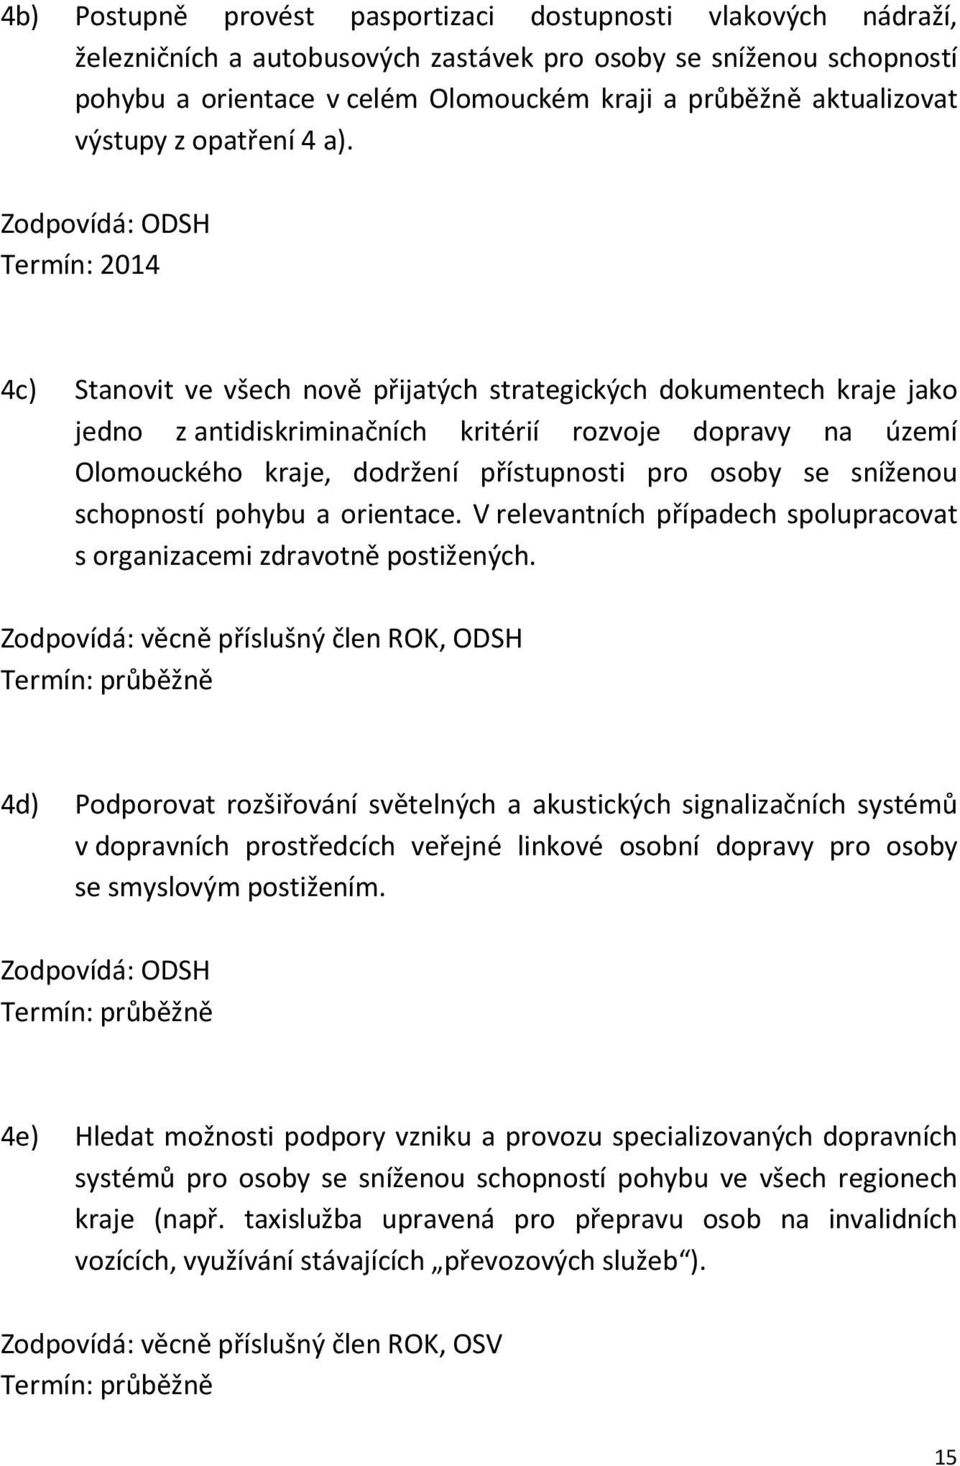 Zodpovídá: ODSH Termín: 2014 4c) Stanovit ve všech nově přijatých strategických dokumentech kraje jako jedno z antidiskriminačních kritérií rozvoje dopravy na území Olomouckého kraje, dodržení